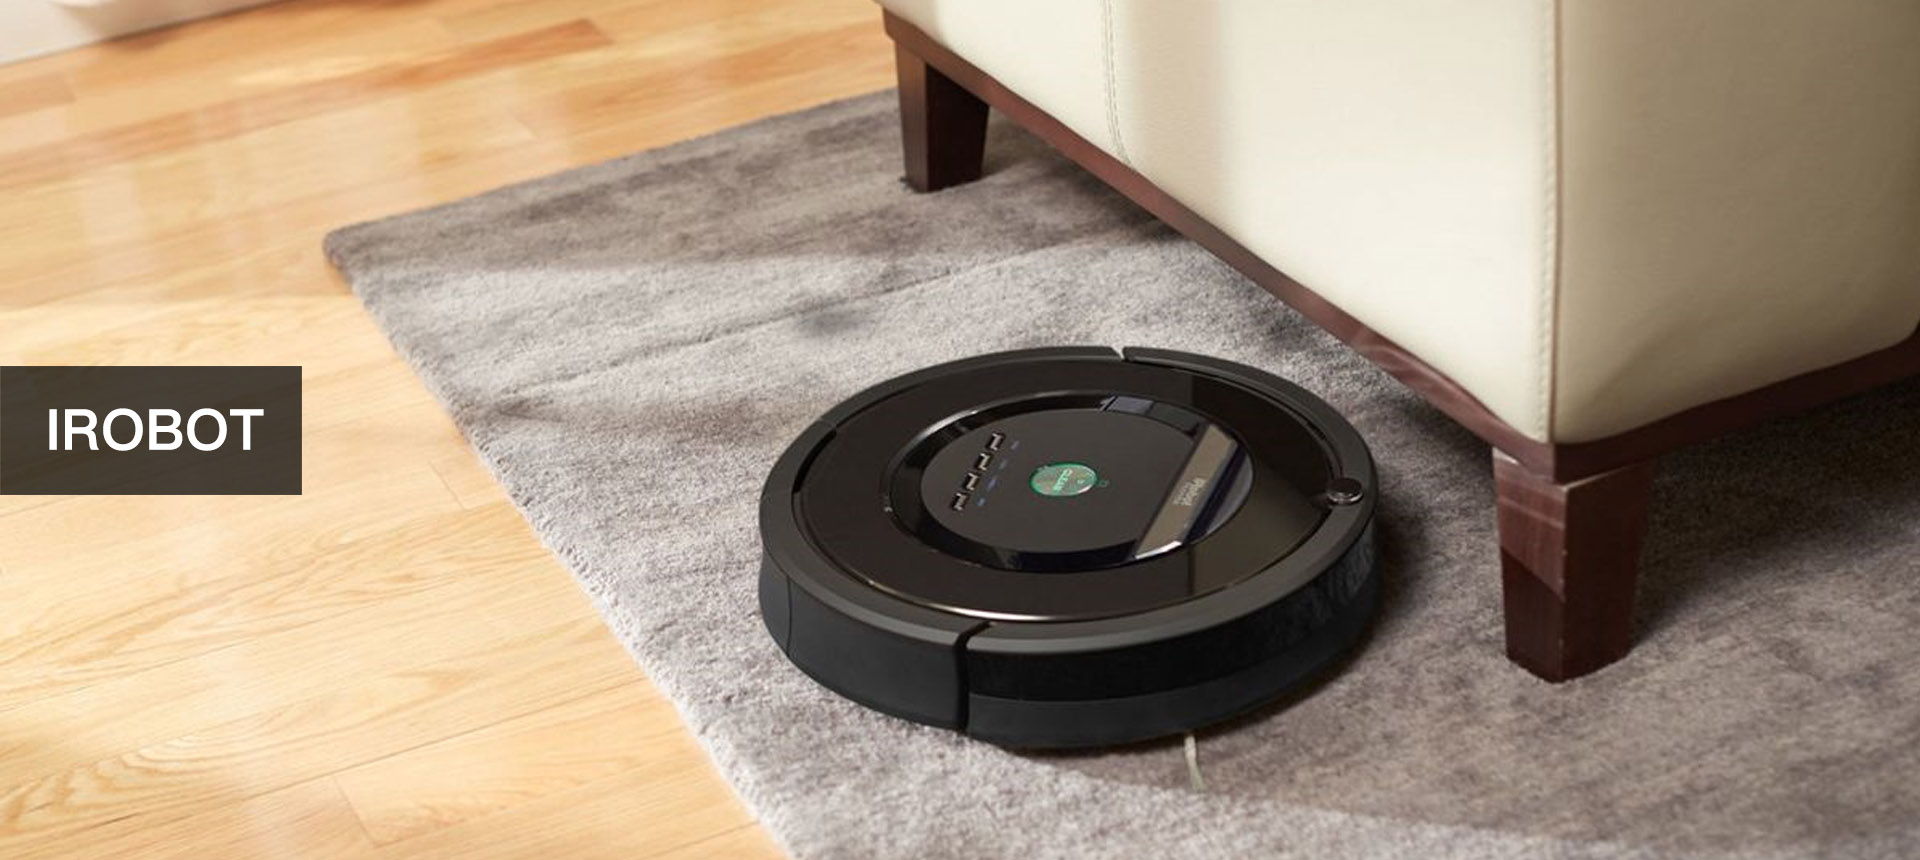 Irobot Robot Vacuum Reviews 2021 Which, Irobot Hardwood Floor Cleaner Reviews